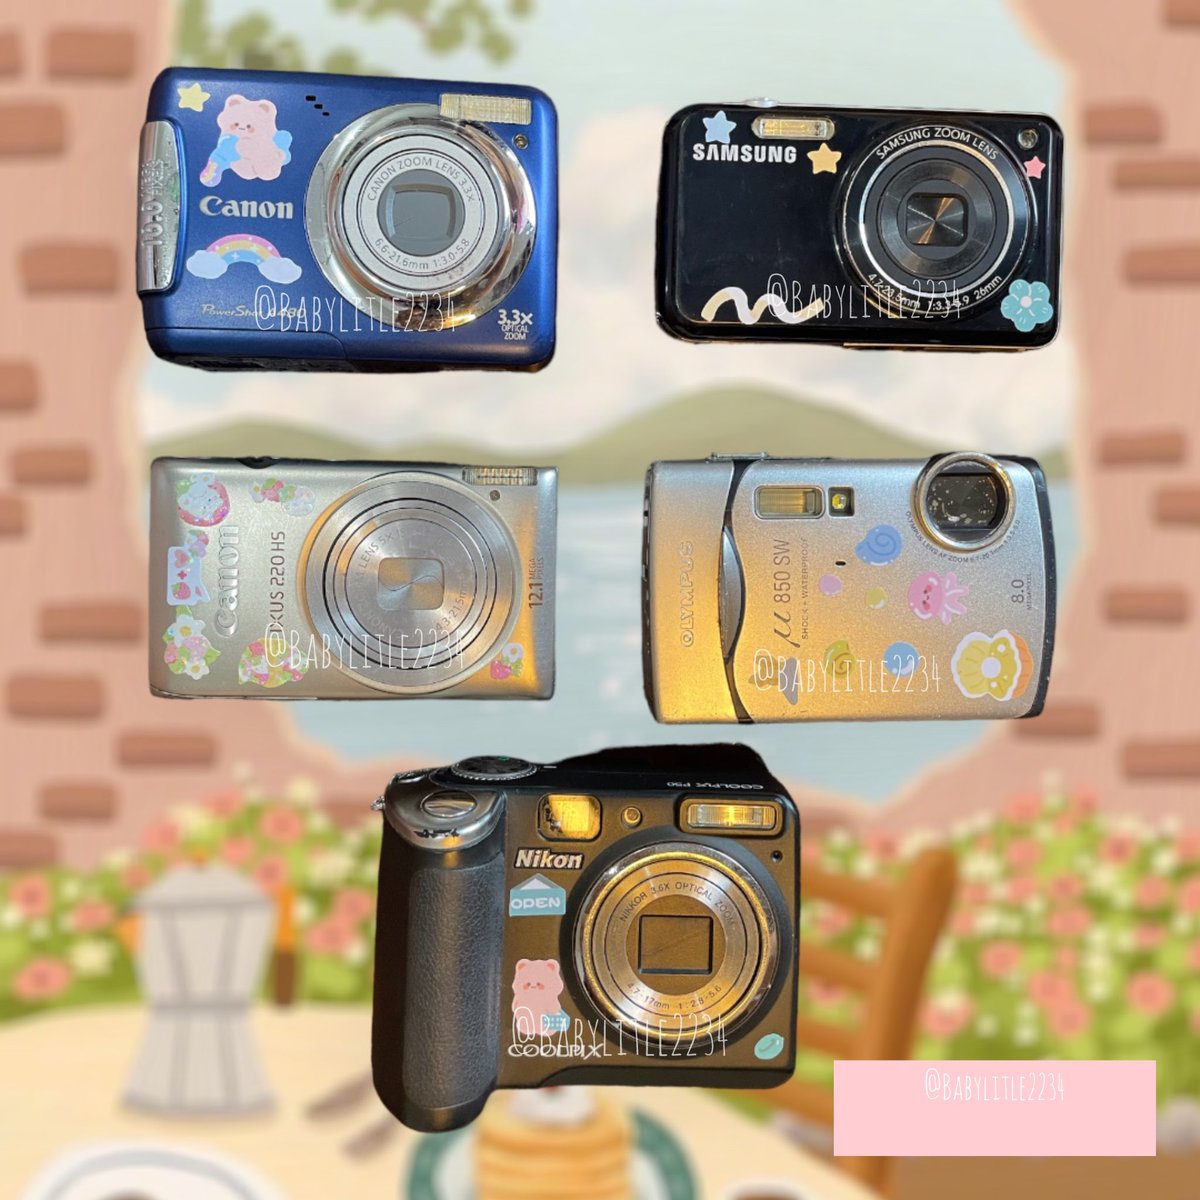 🗓️ลงของ รอบวันที่012/05🗓️
⏰เวลา21:00⏰
📌ปักหมุดกันได้นะงับ เดี๋ยวมาตาม📌
⚠️มีรุ่นฮิต ตัวที่ซ้อก้าดจับนะงับ⚠️
#กล้องดิจิตอล #กล้องดิจิตอลคอมแพค #กล้องมือสอง #กล้องถ่ายรูป #ส่งต่อกล้อง #มือสองสภาพดี #กล้องดิจิตอลมือสอง